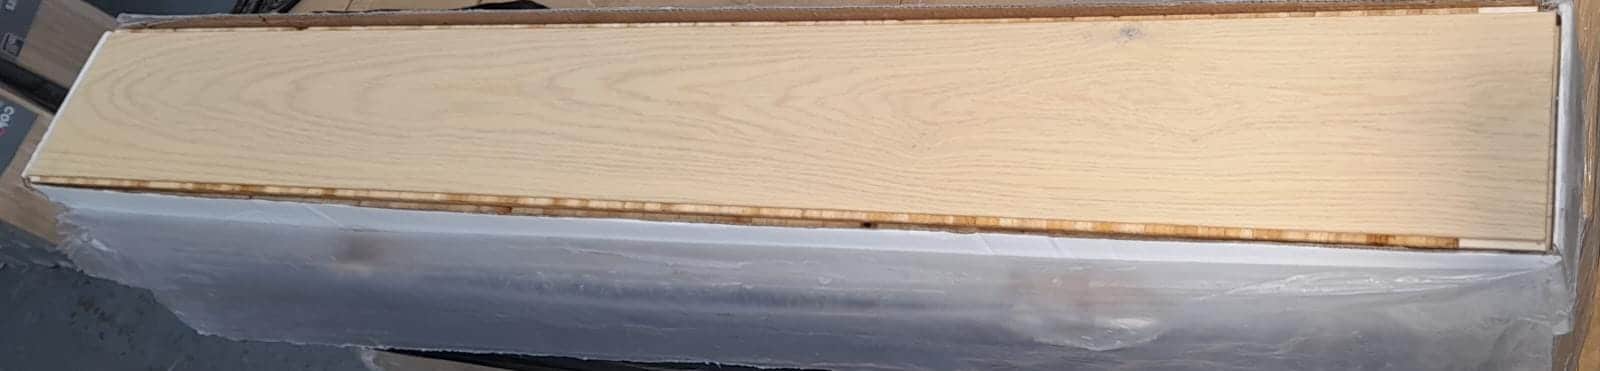 GoodHome Liskamm Natural Real Oak Wood Top Layer Flooring Varnished 7 Planks 7137-7